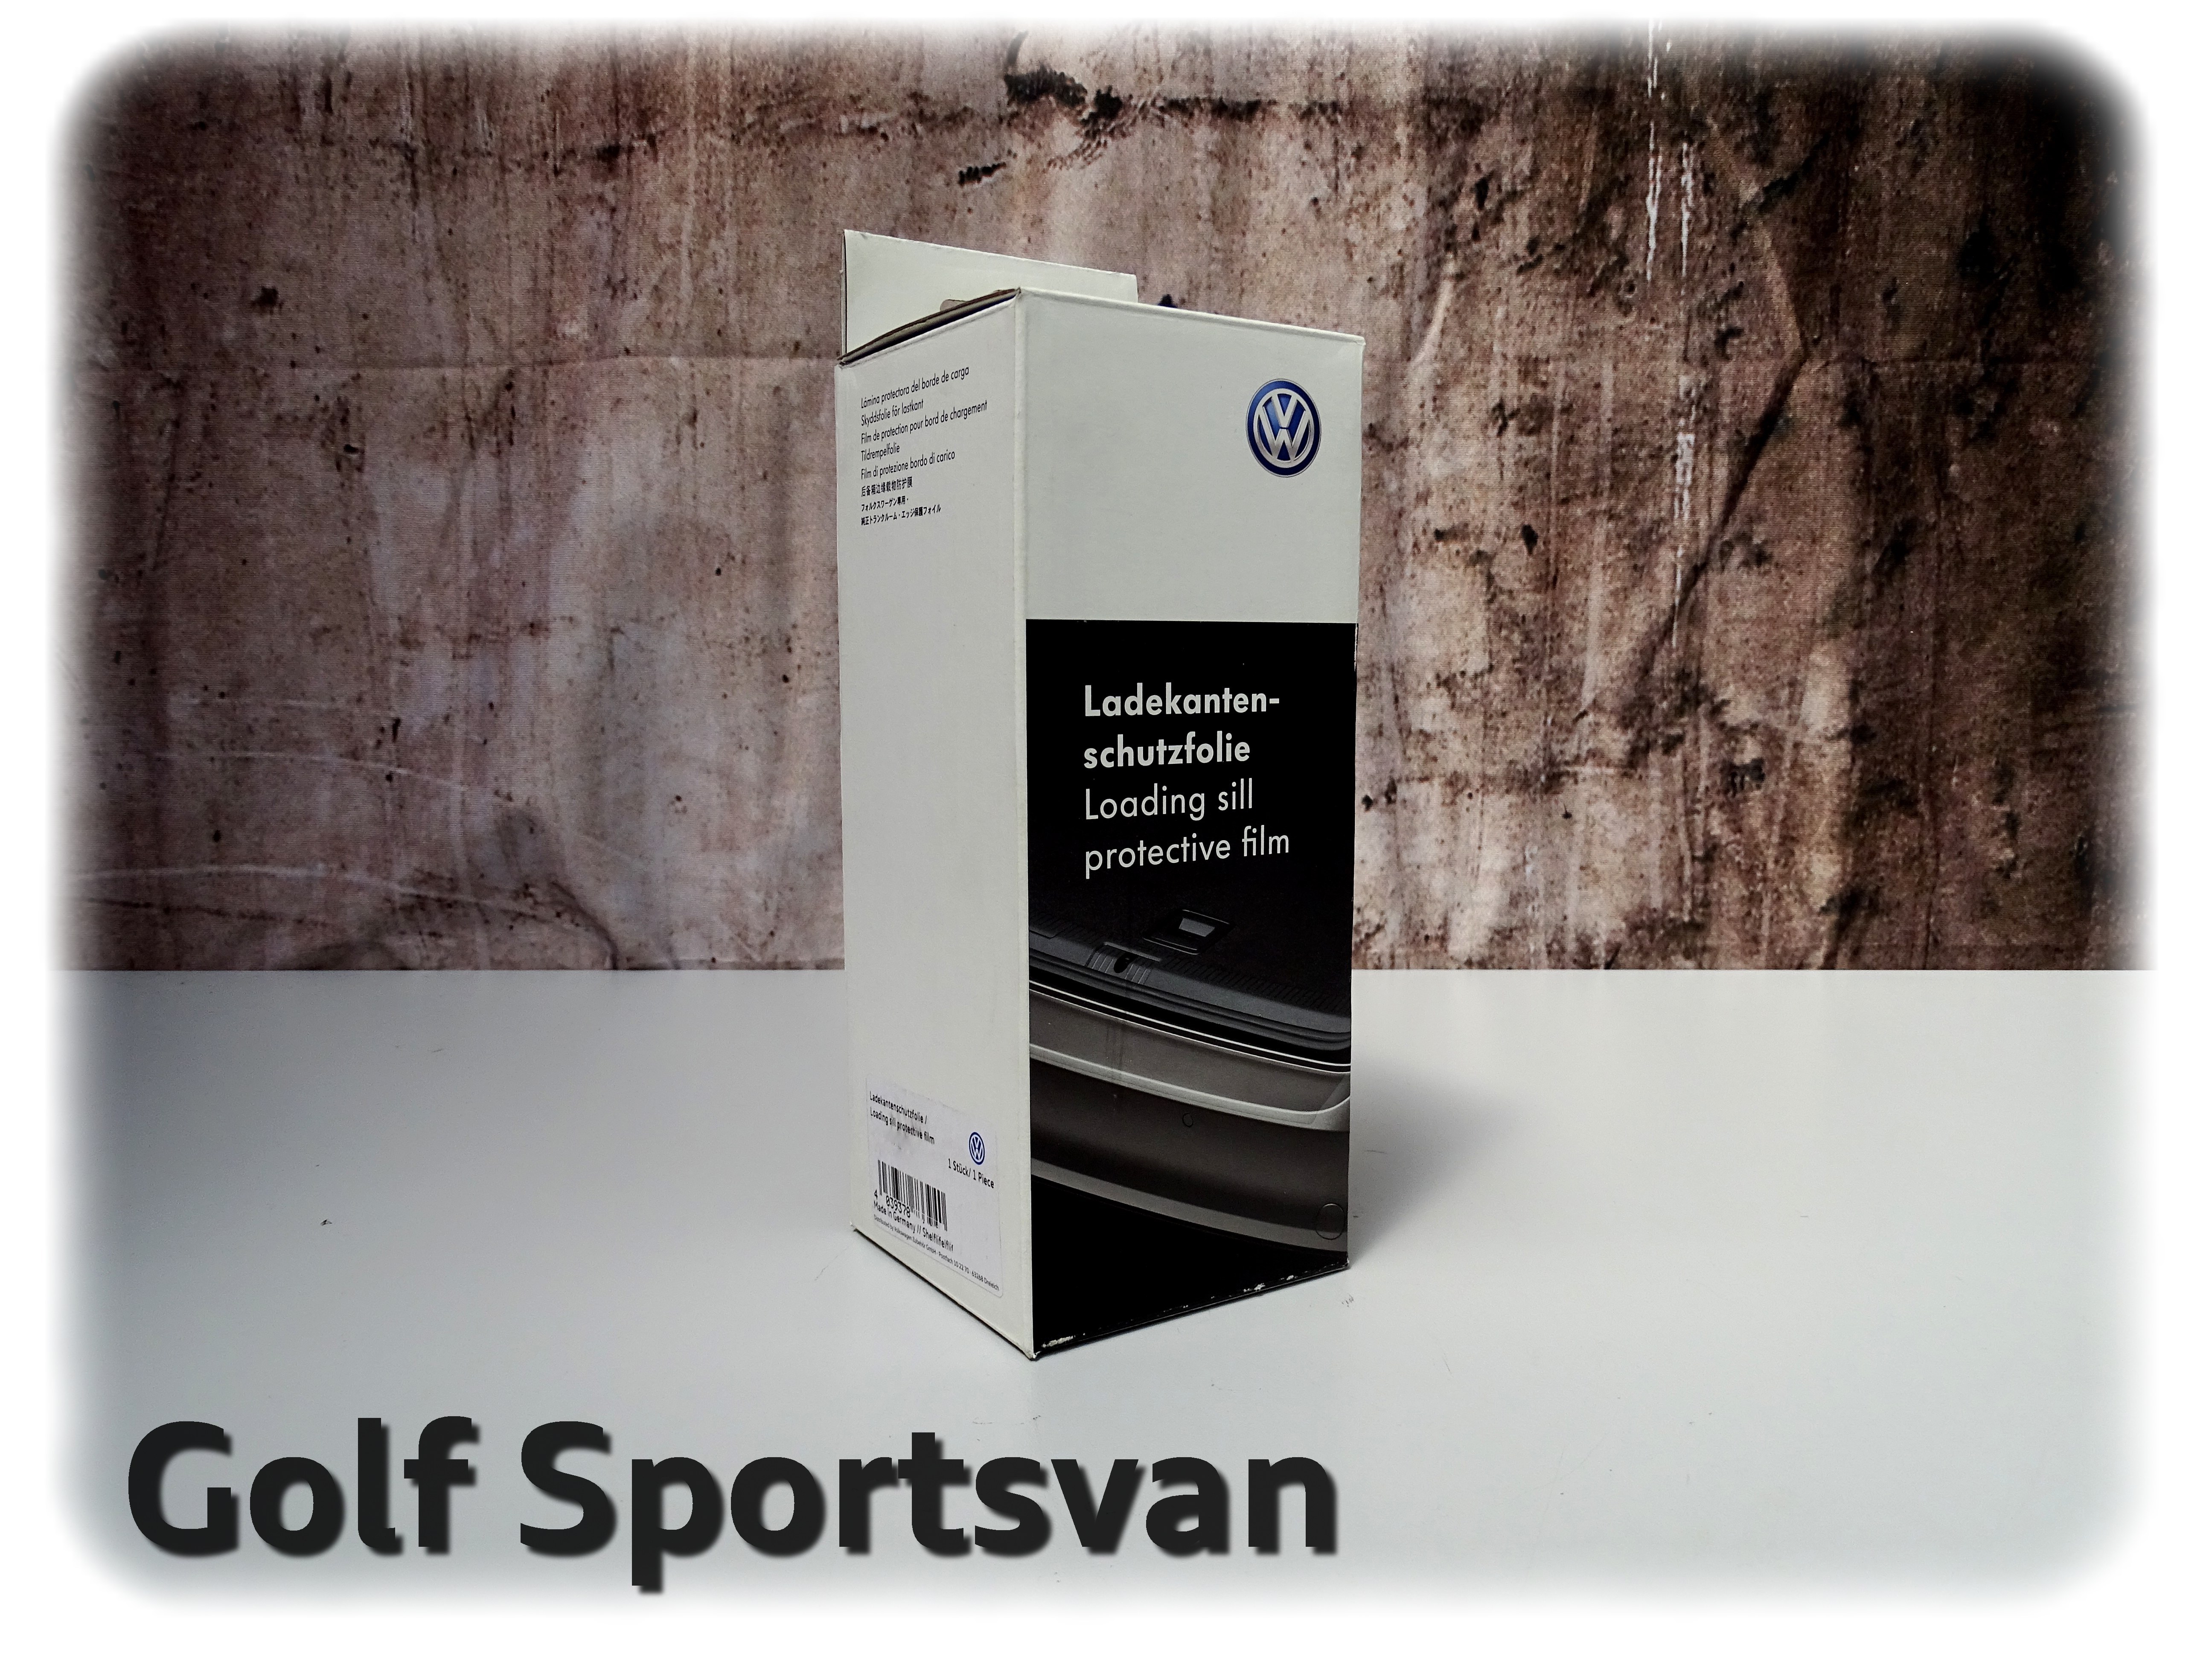 Steingruppe Golf VW Sportsvan - 510061197B Ladekantenschutz Original Ladekante Zubehör / Online - | Shop Volkswagen (transparent) -